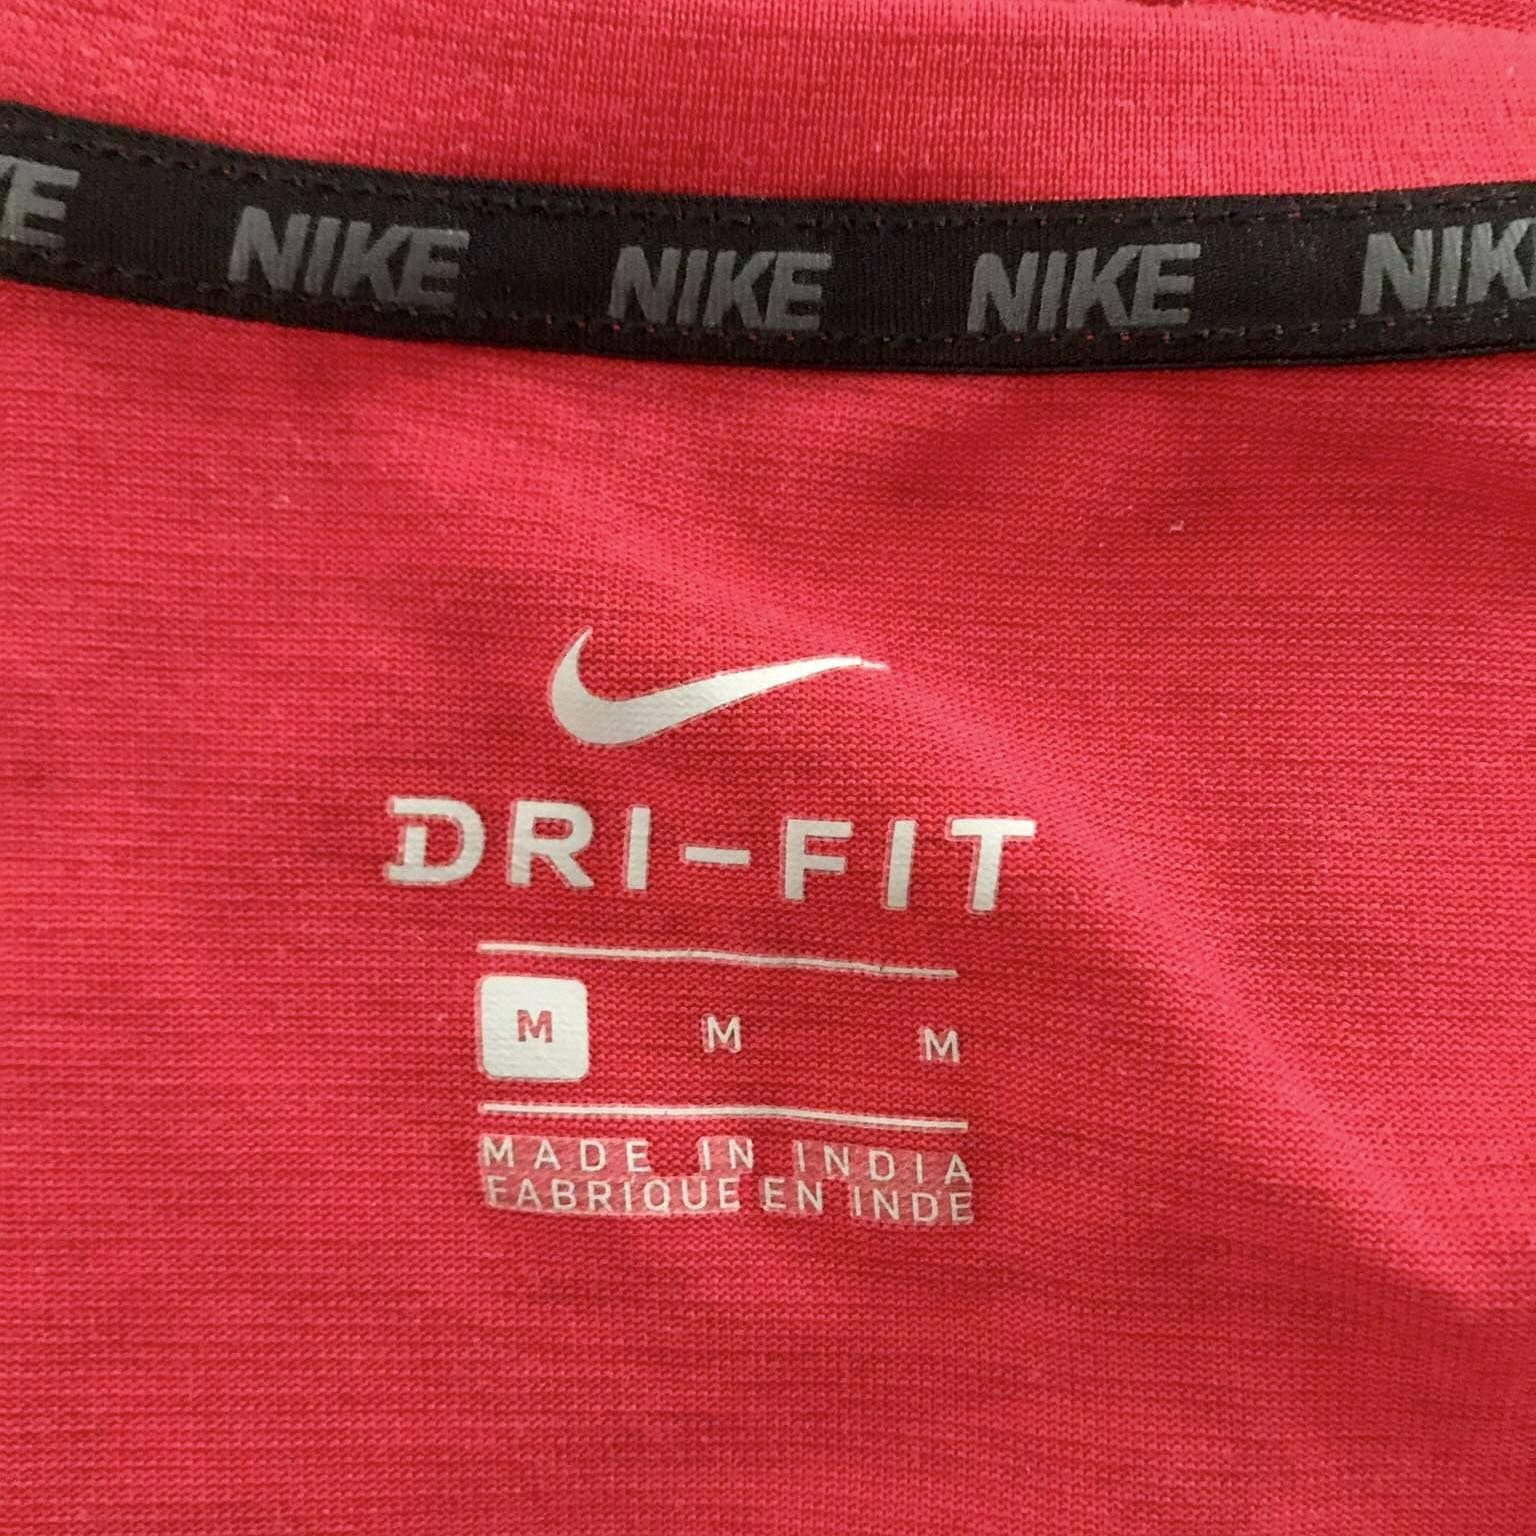 Nike dri-fit koszulka męska M
Rozmiar:M
kolor:czerwony 
Stan: bardzo d